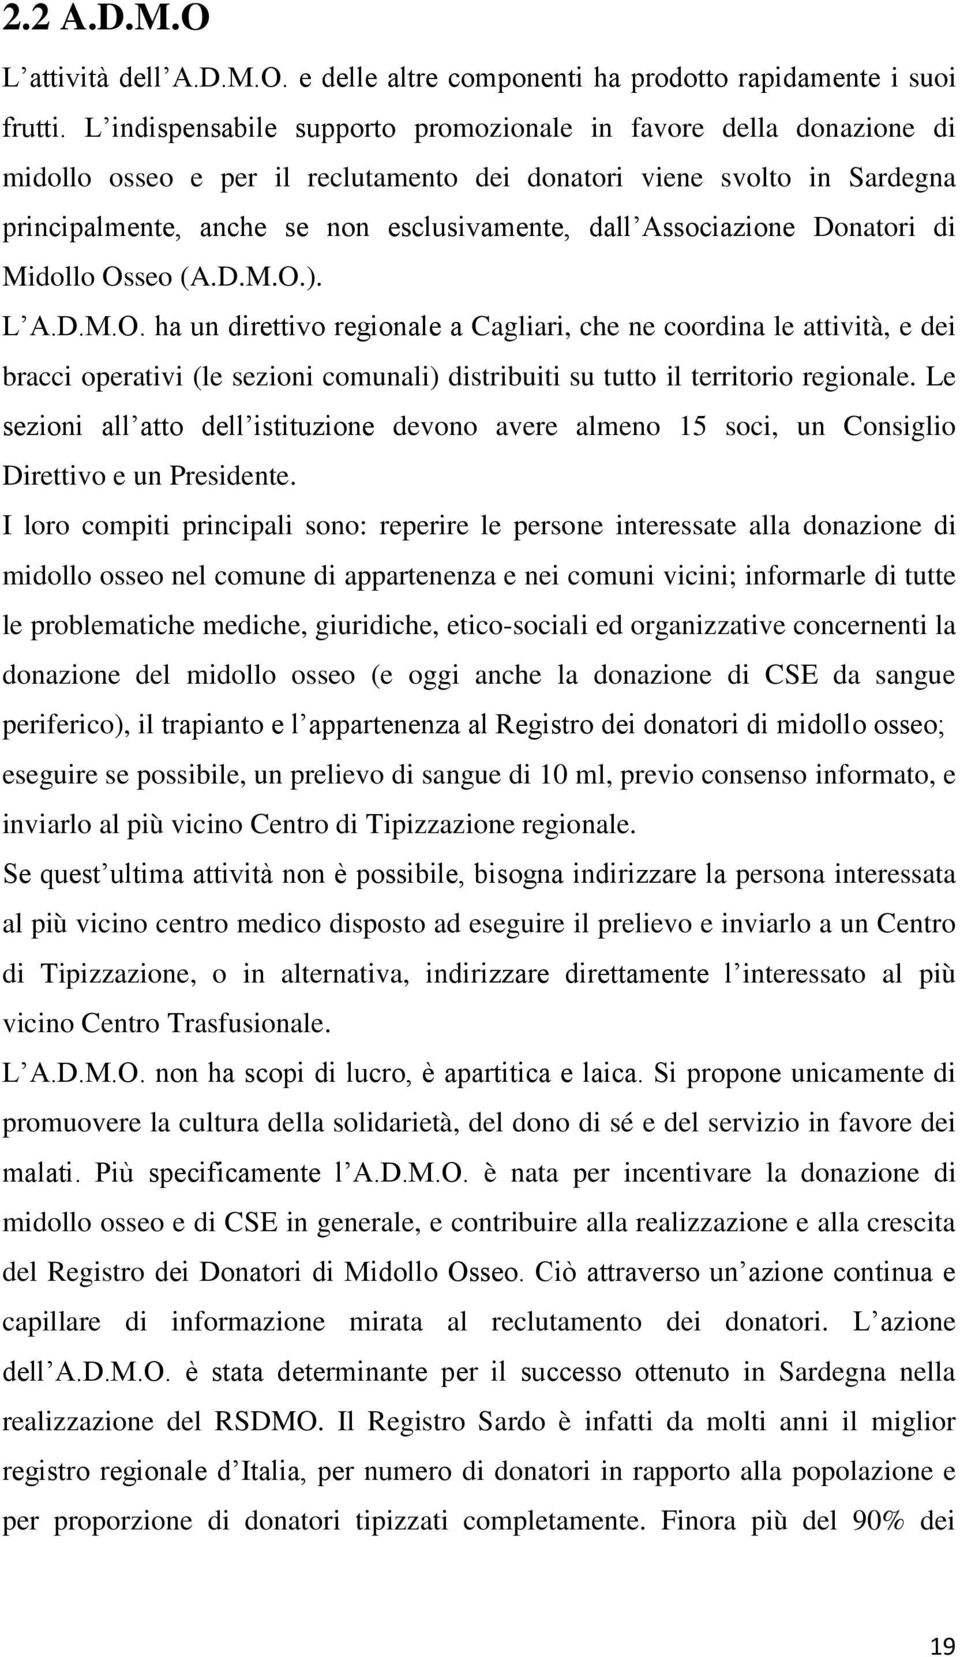 Associazione Donatori di Midollo Osseo (A.D.M.O.). L A.D.M.O. ha un direttivo regionale a Cagliari, che ne coordina le attività, e dei bracci operativi (le sezioni comunali) distribuiti su tutto il territorio regionale.